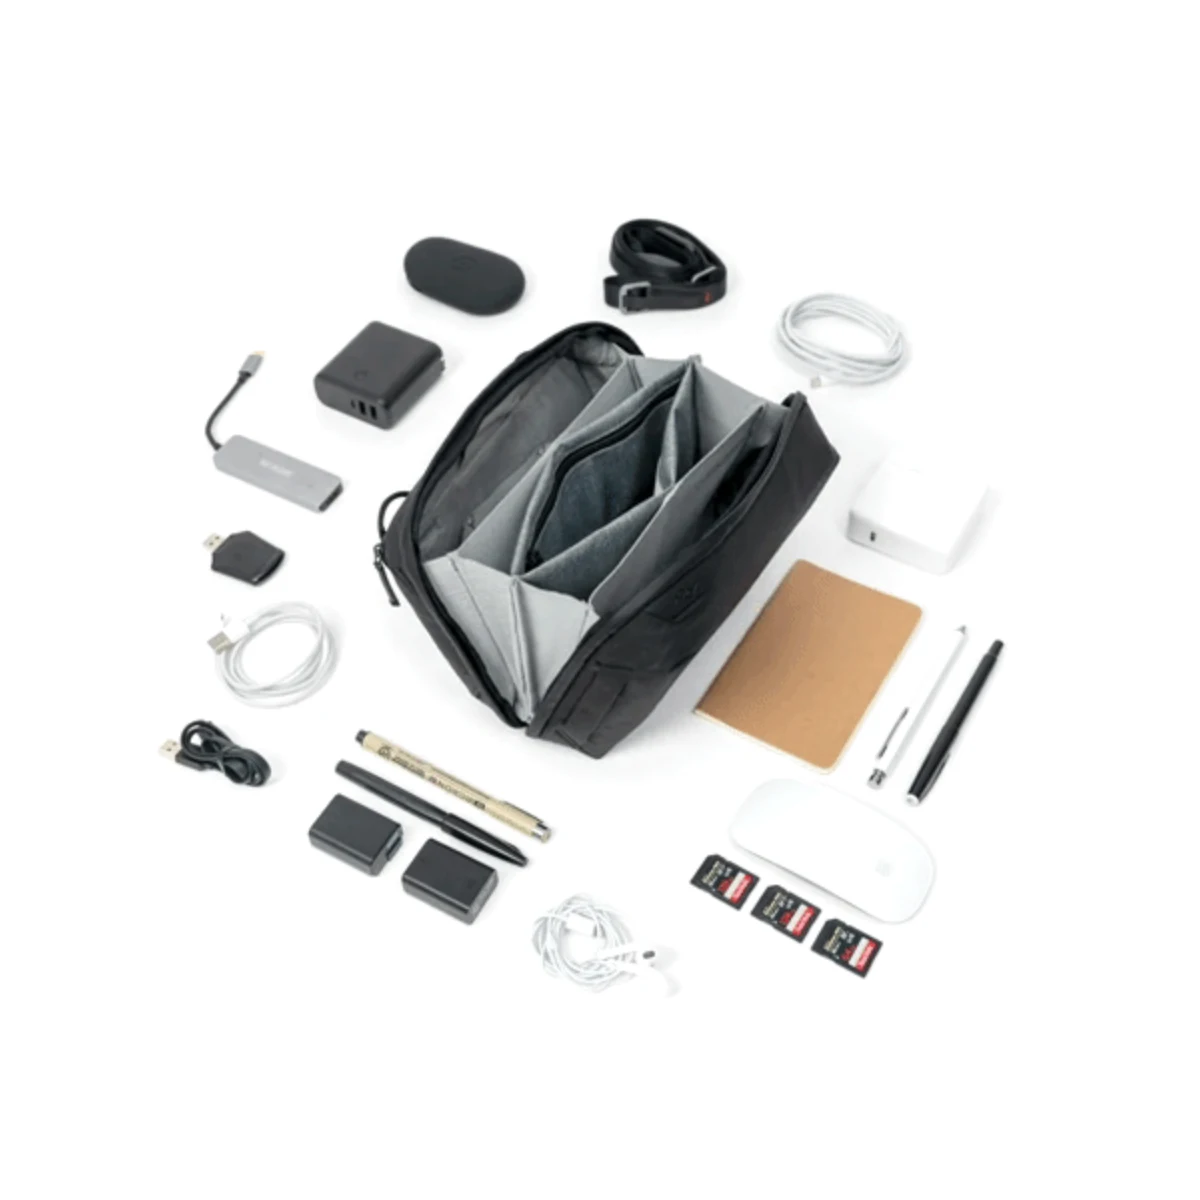 Peak Design Tech Pouch - Black (Schwarz) - Organizer-Tasche für